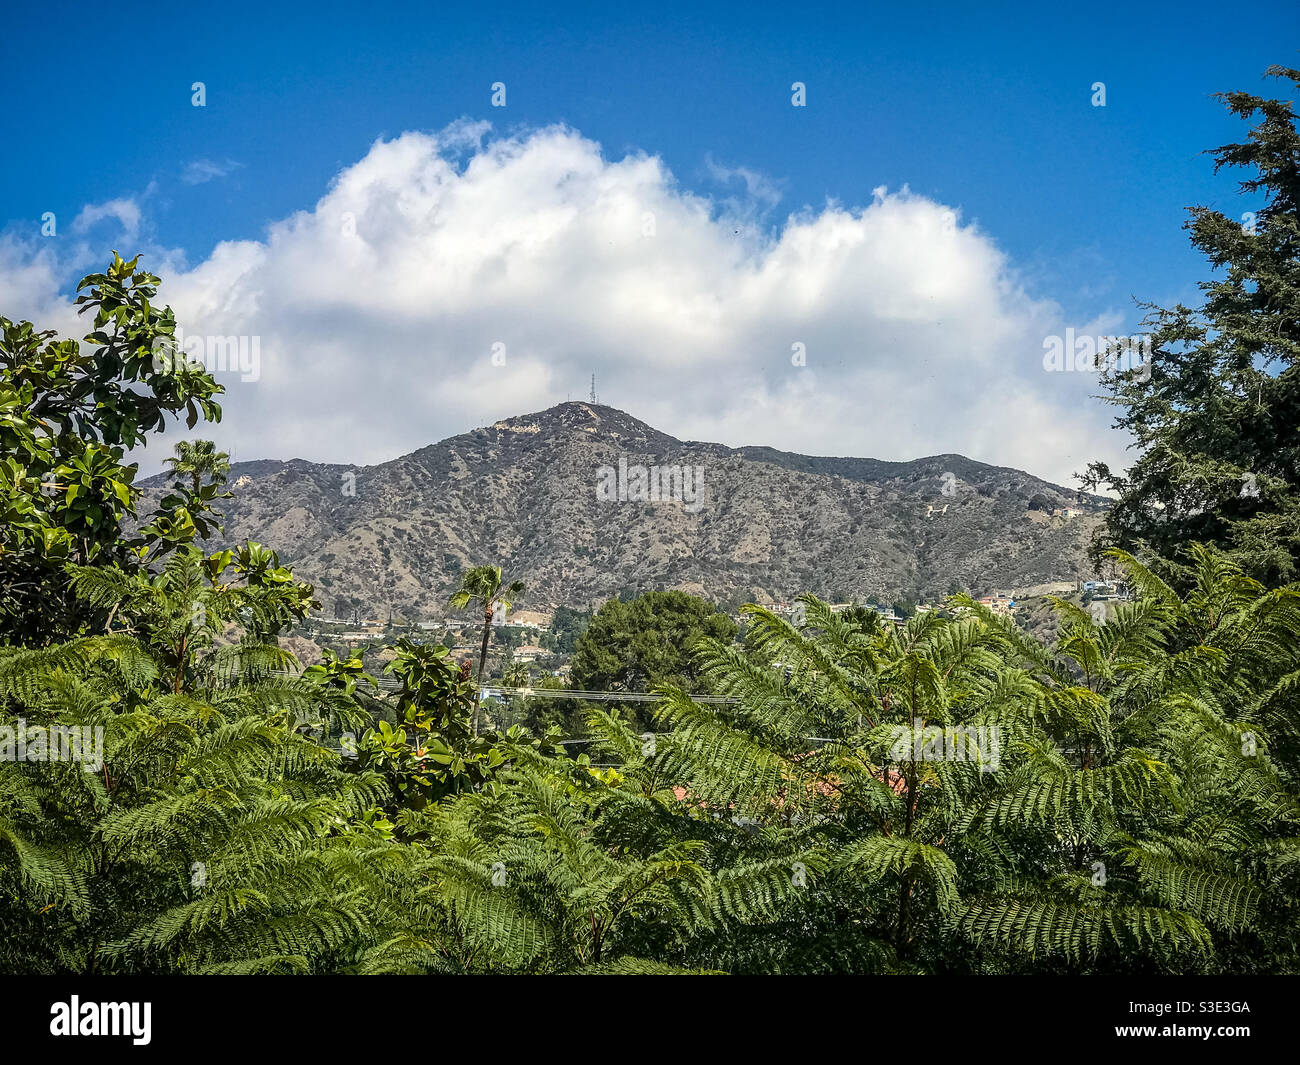 Verdugo Mountains seen through green trees Stock Photo